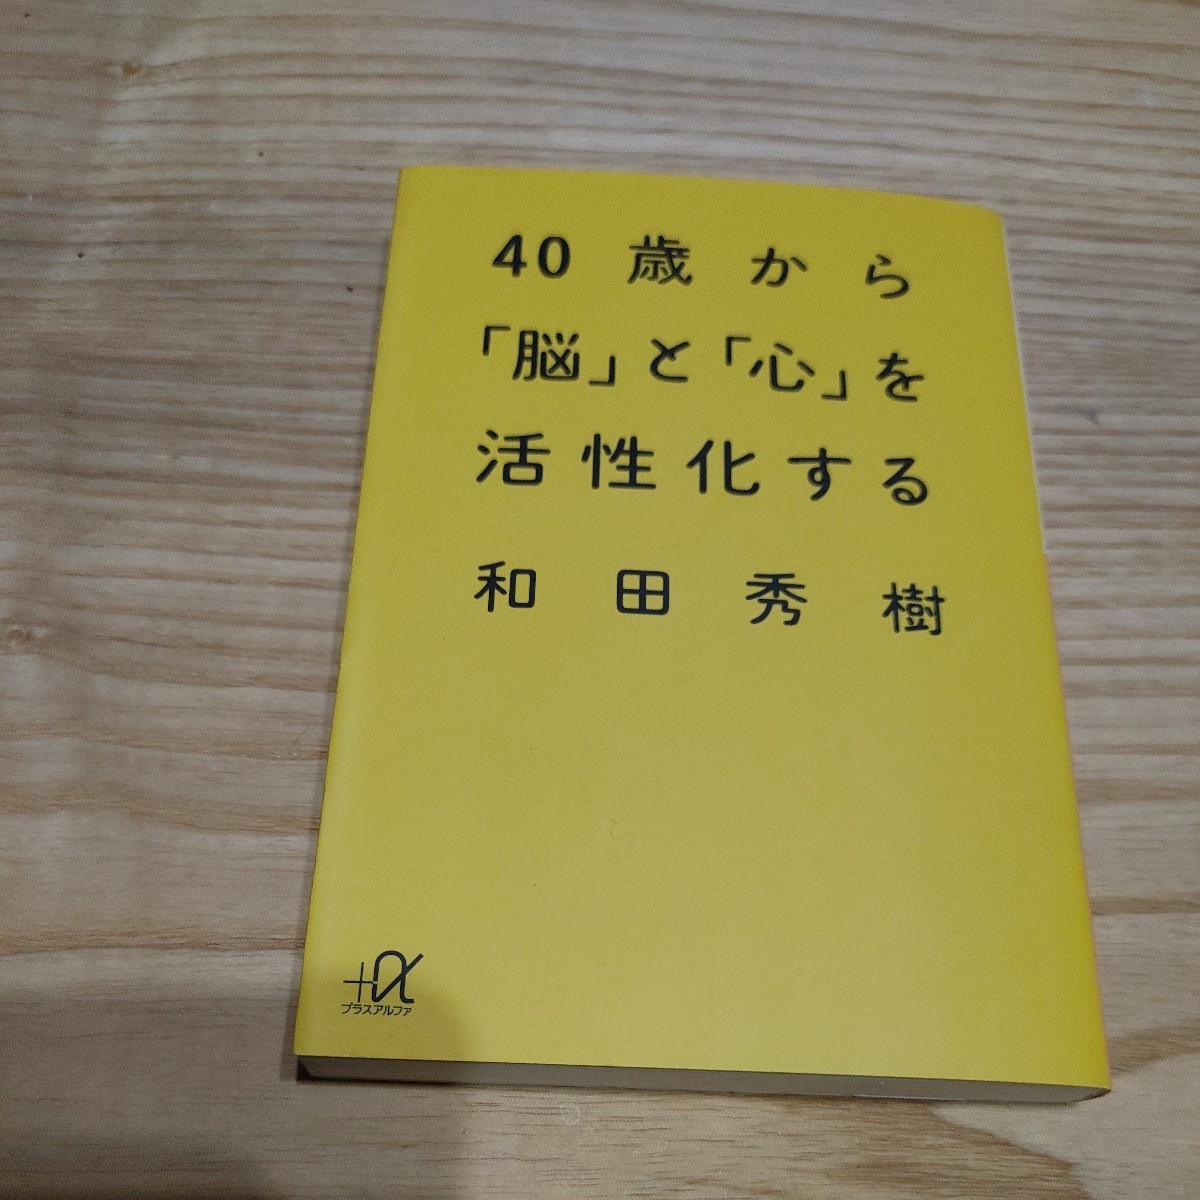 【古本雅】 40歳から「脳」と「心」を活性化する和田秀樹 著 プラスアルファ文庫 ISBN4-06-256851-9_画像1